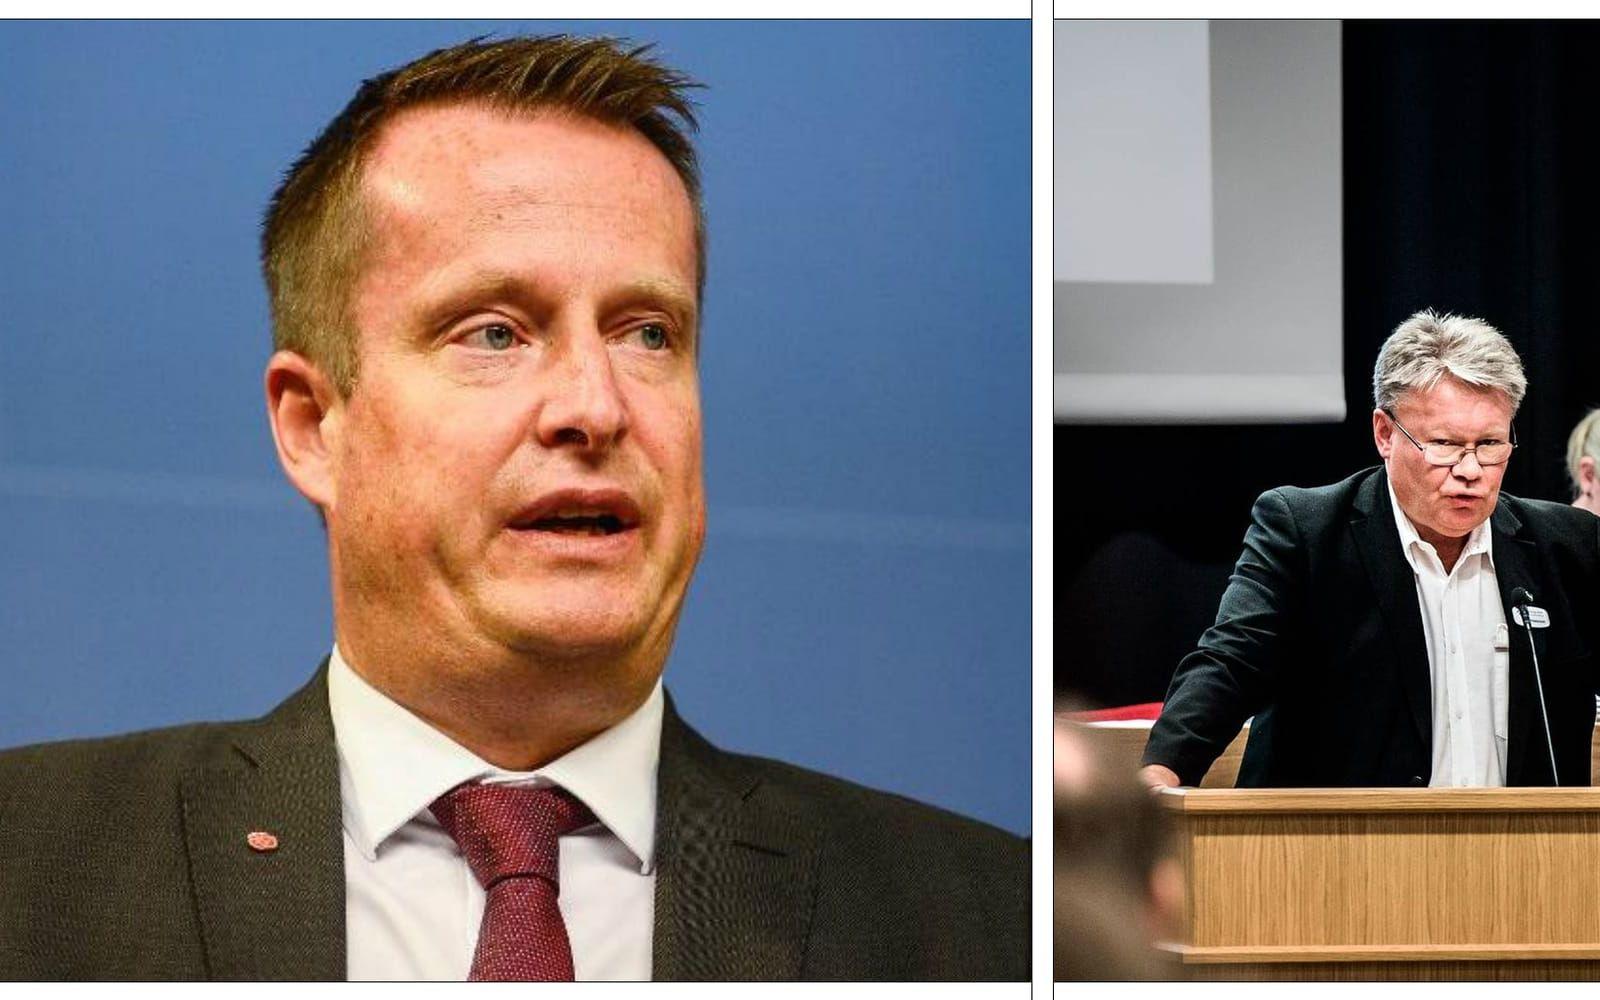 Inrikesminister Anders Ygeman (S) ifrågasätter SD:s syn på yttrandefrihet.